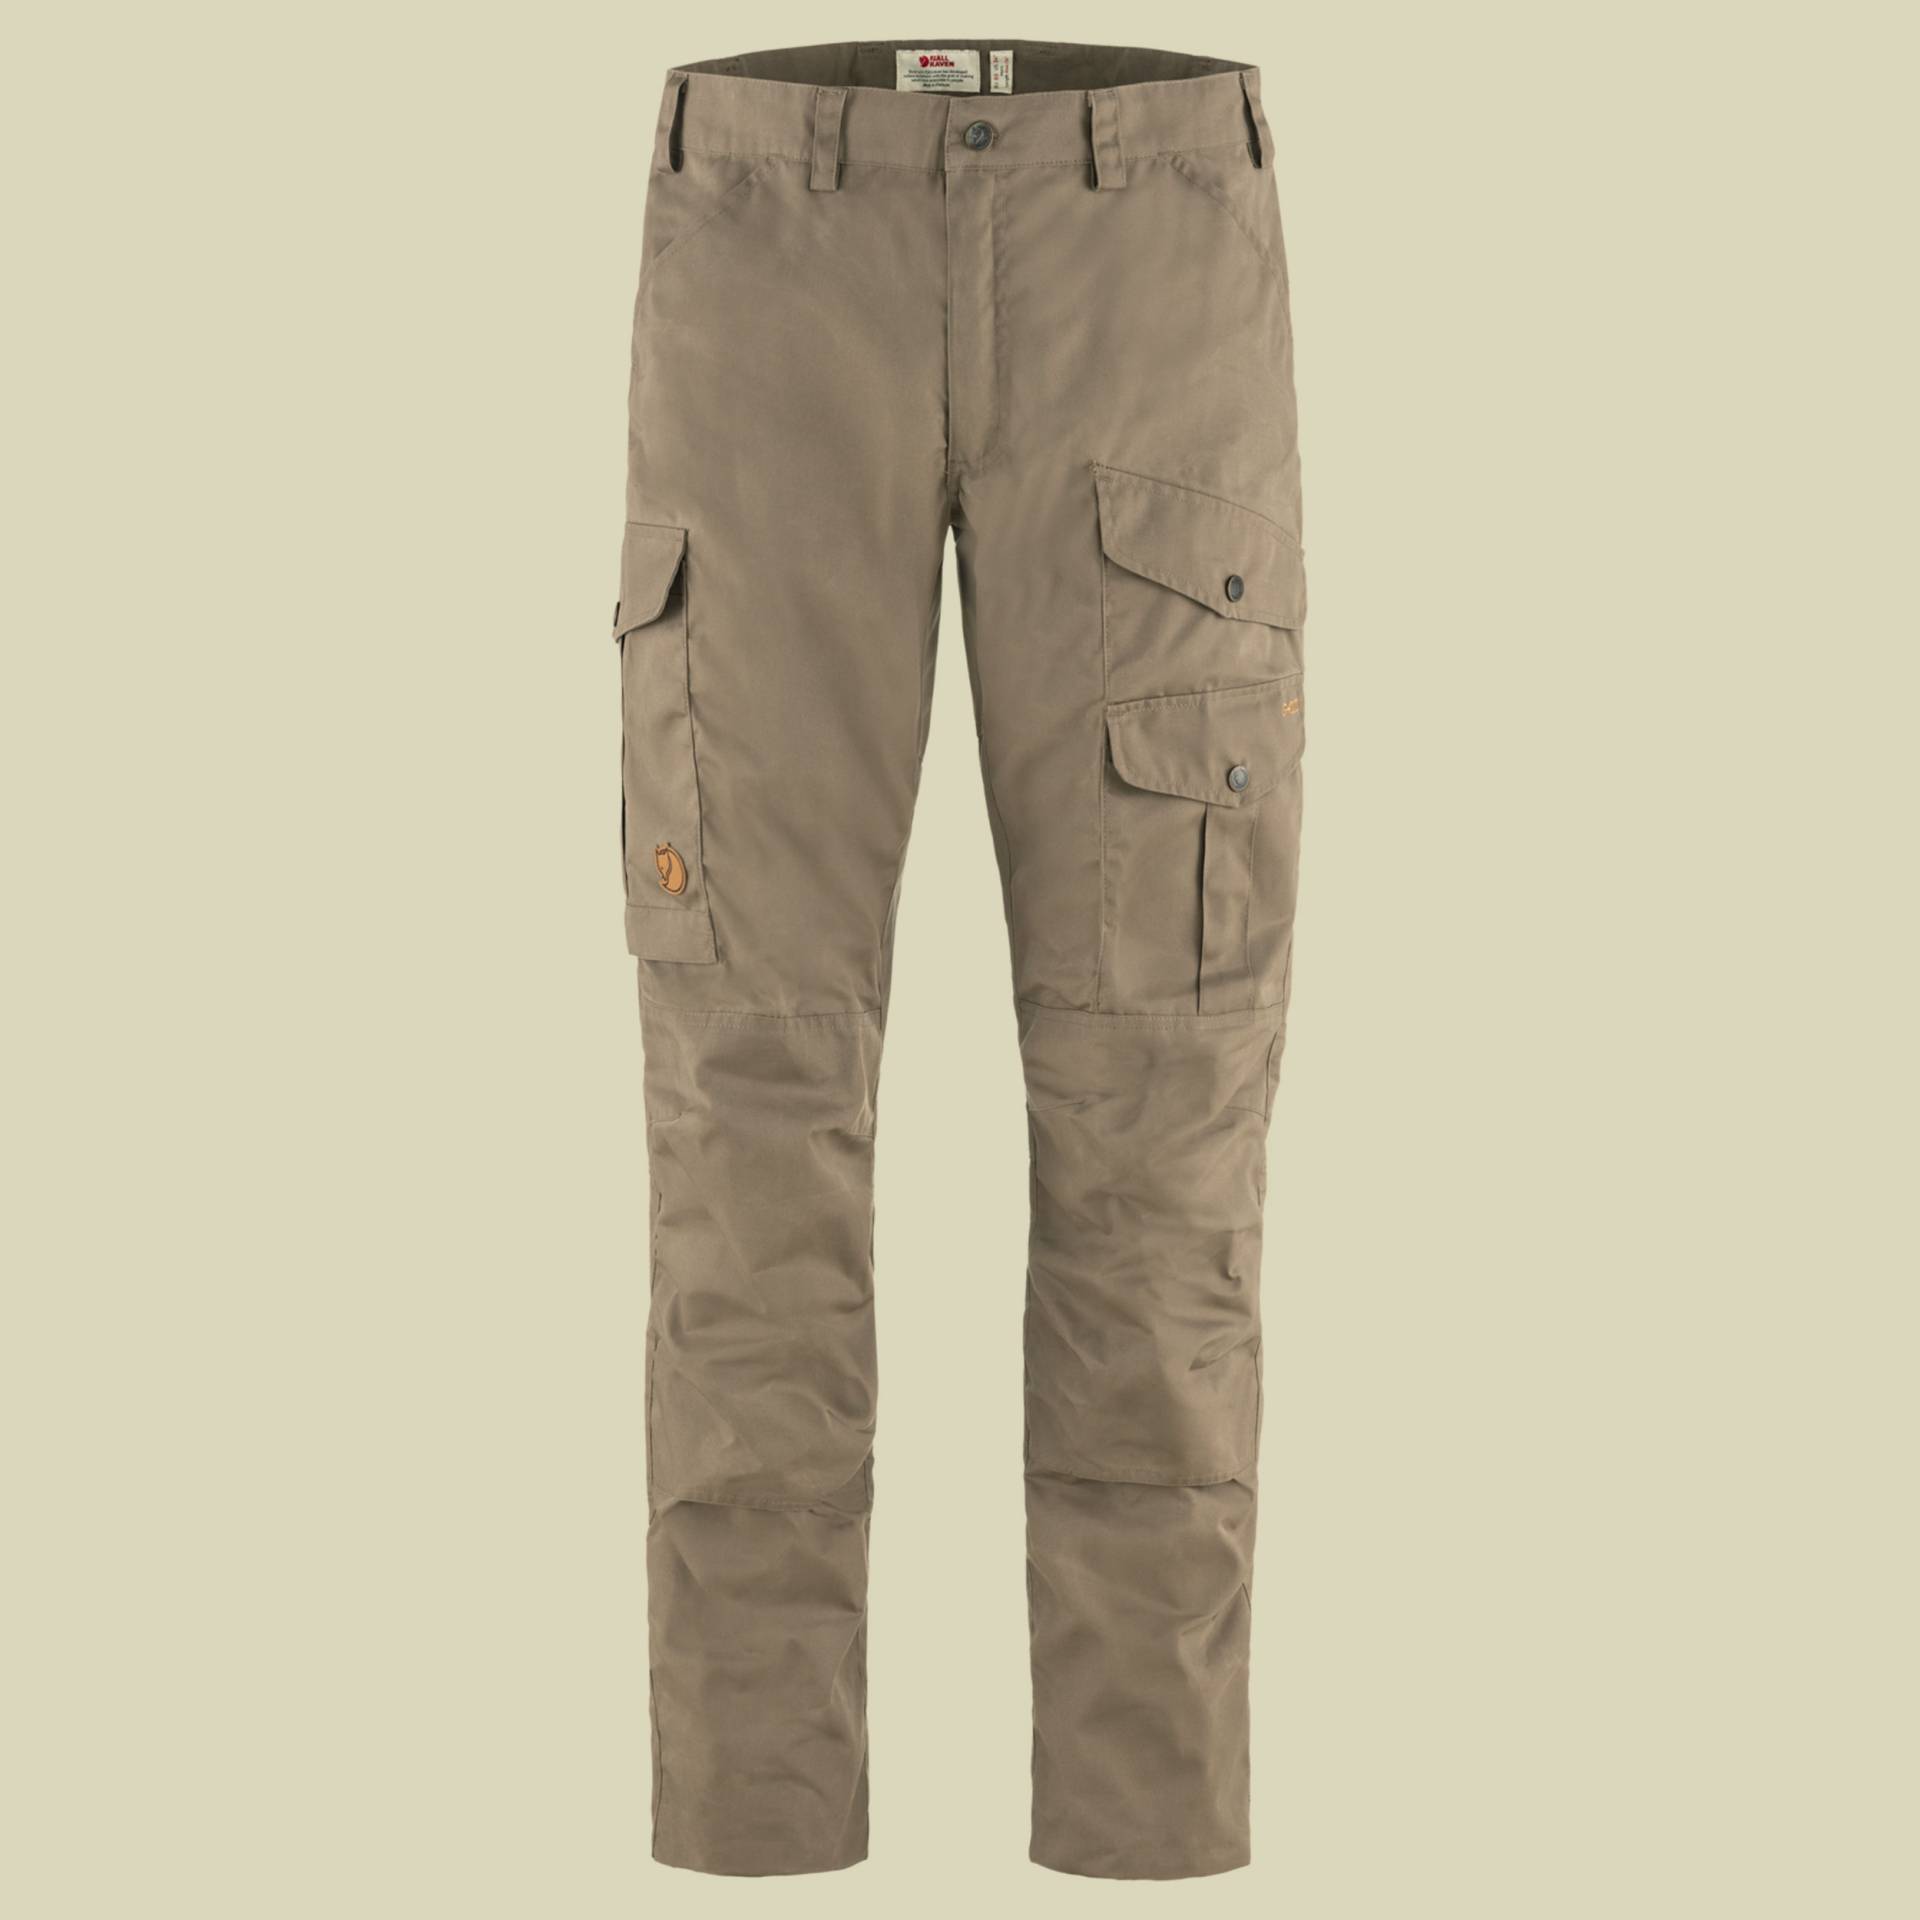 Barents Pro Trousers Men Größe 48 Farbe suede brown von Fjällräven